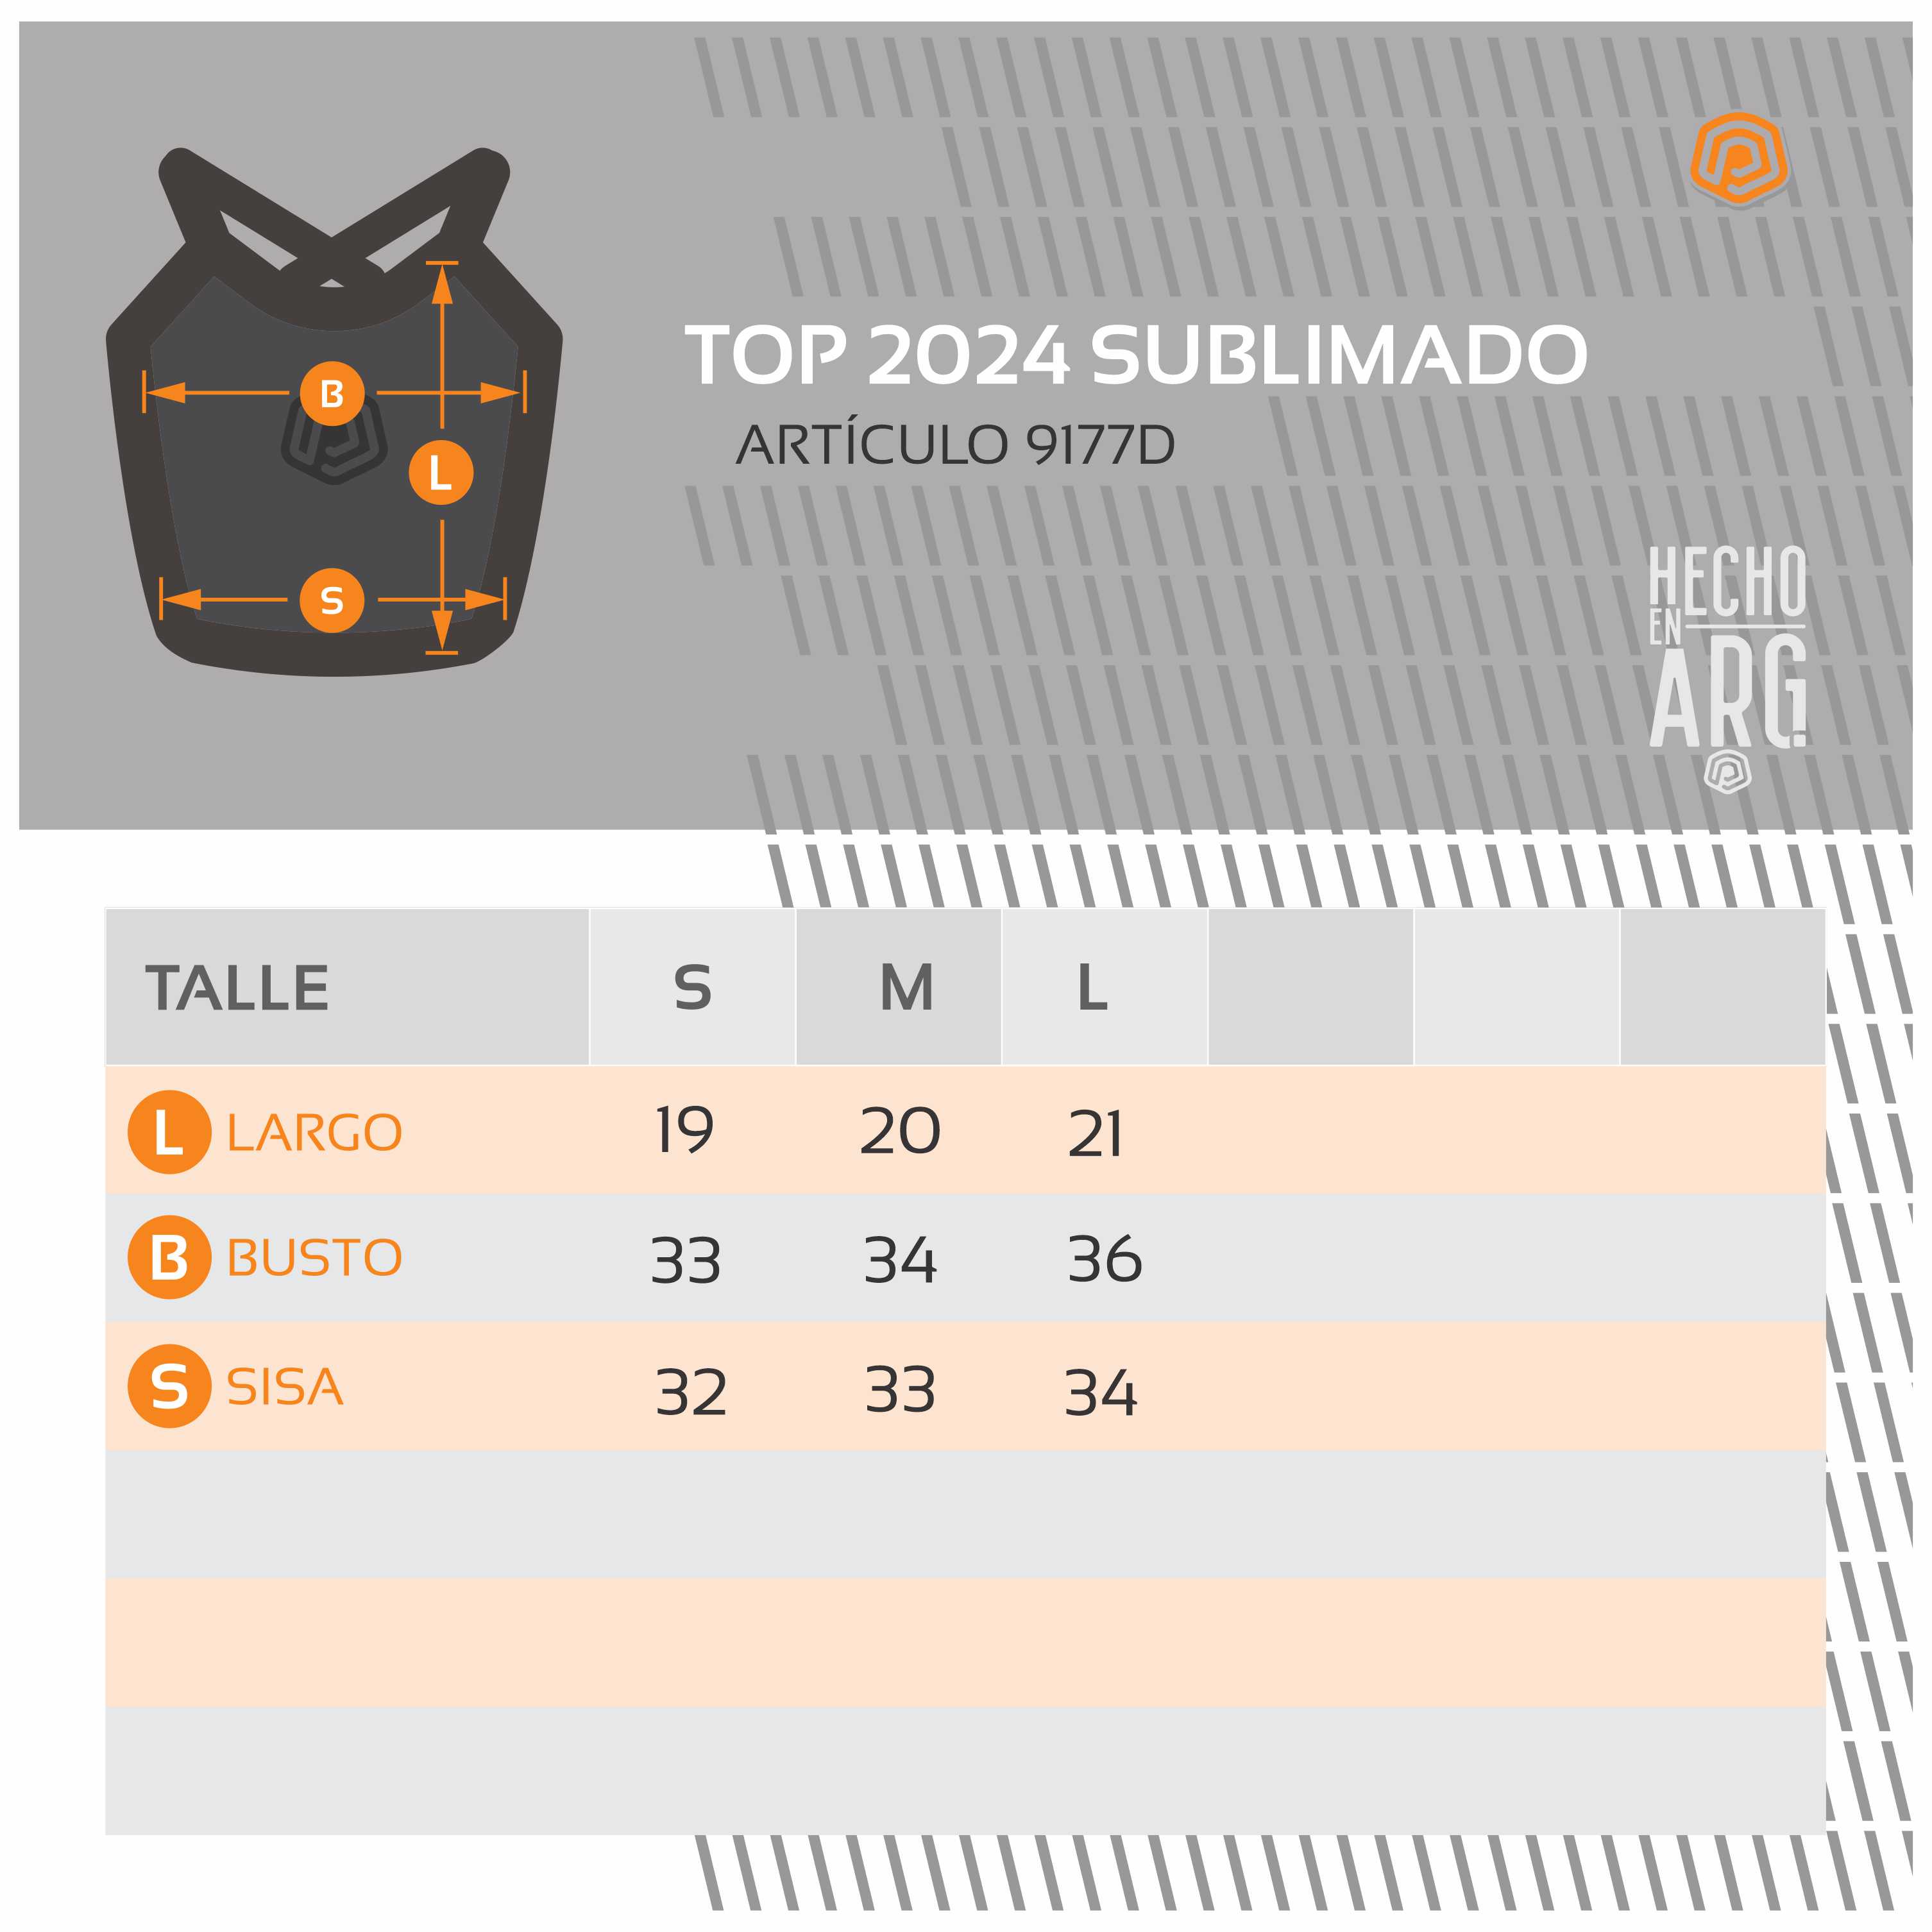 TABLA DE TALLES TOP SUBLIMADO 2024